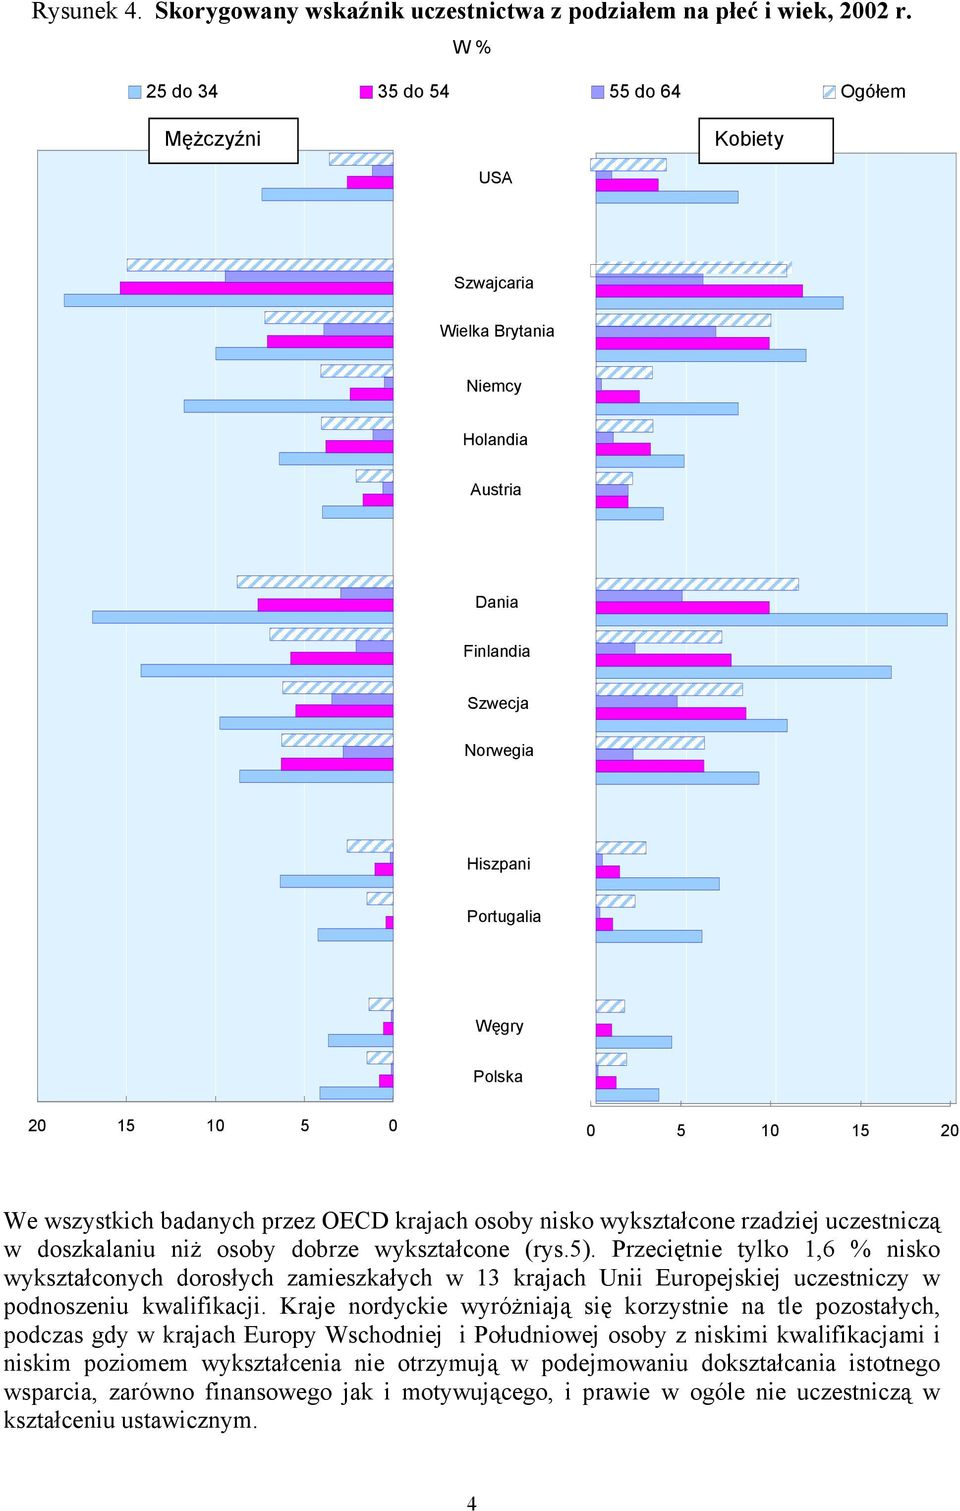 wszystkich badanych przez OECD krajach osoby nisko wykształcone rzadziej uczestniczą w doszkalaniu niż osoby dobrze wykształcone (rys.5).